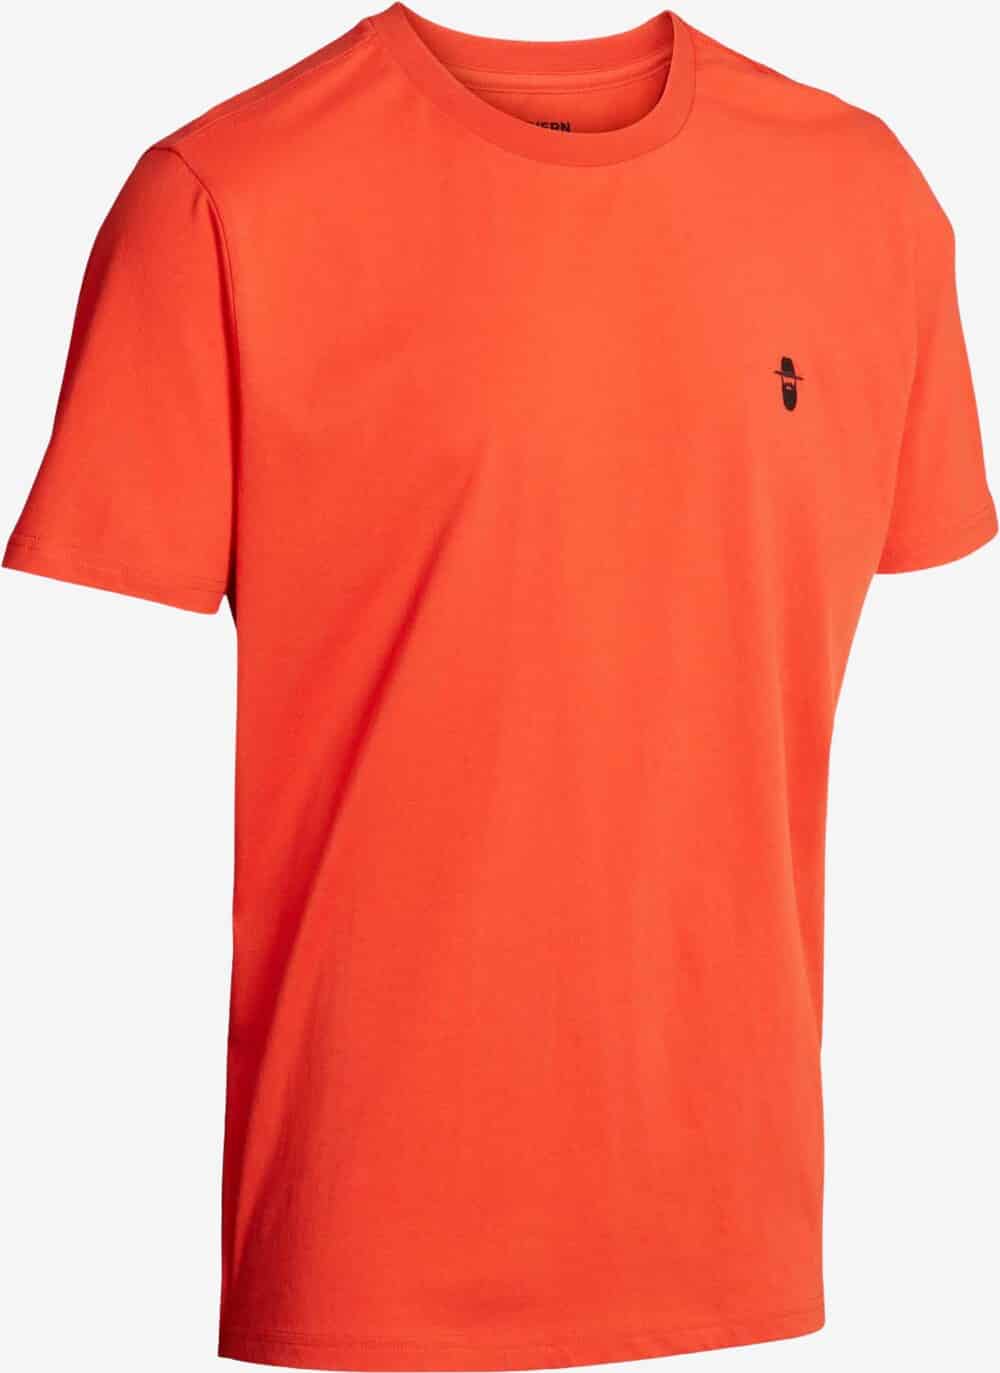 Se Northern Hunting - Karl T-shirt (Orange) - XL hos Friluft.dk